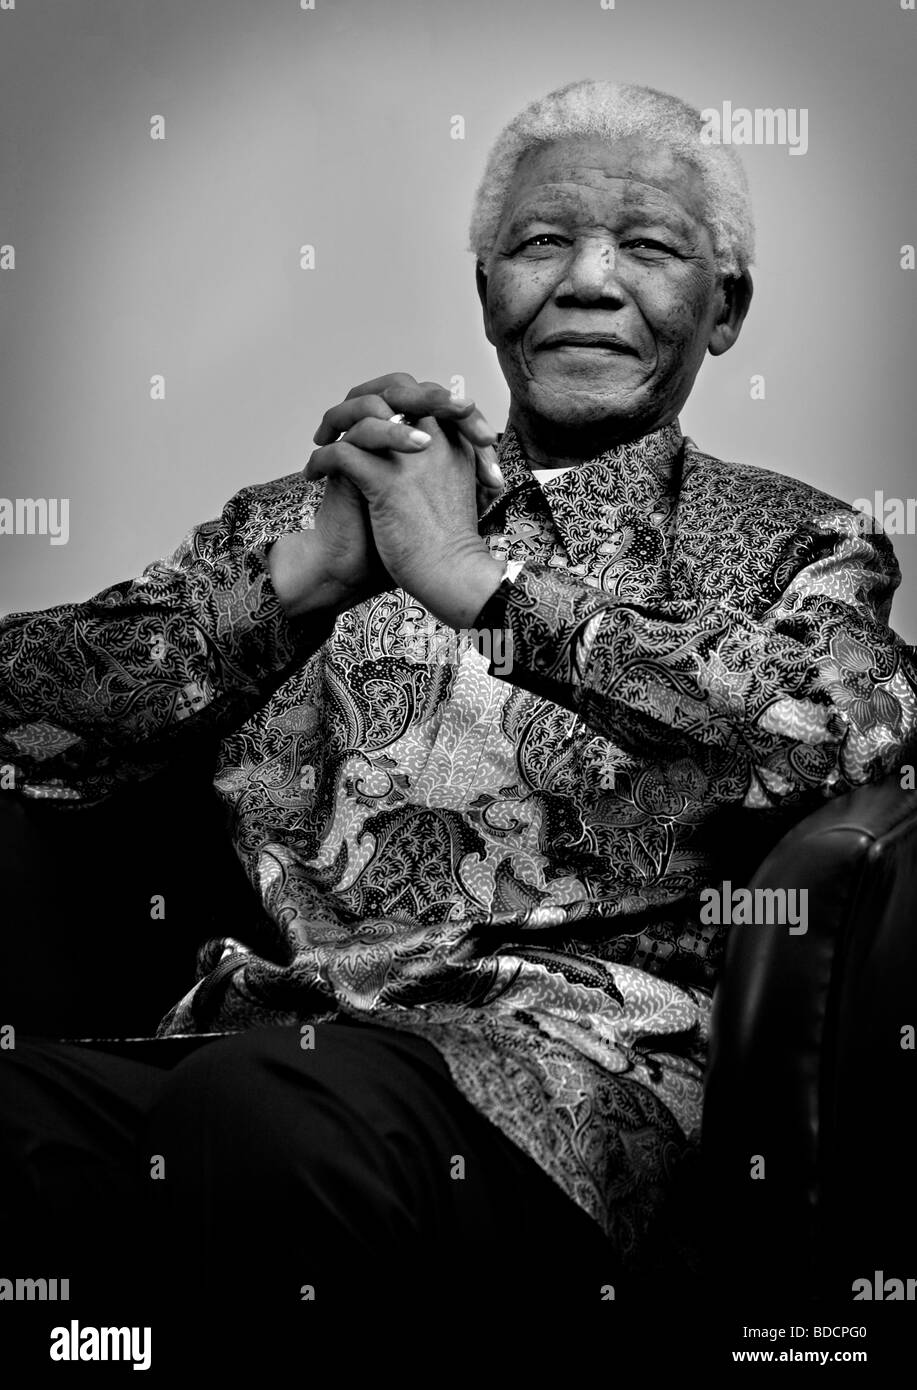 Nelson Mandela Black and White Stock Photos & Images - Alamy